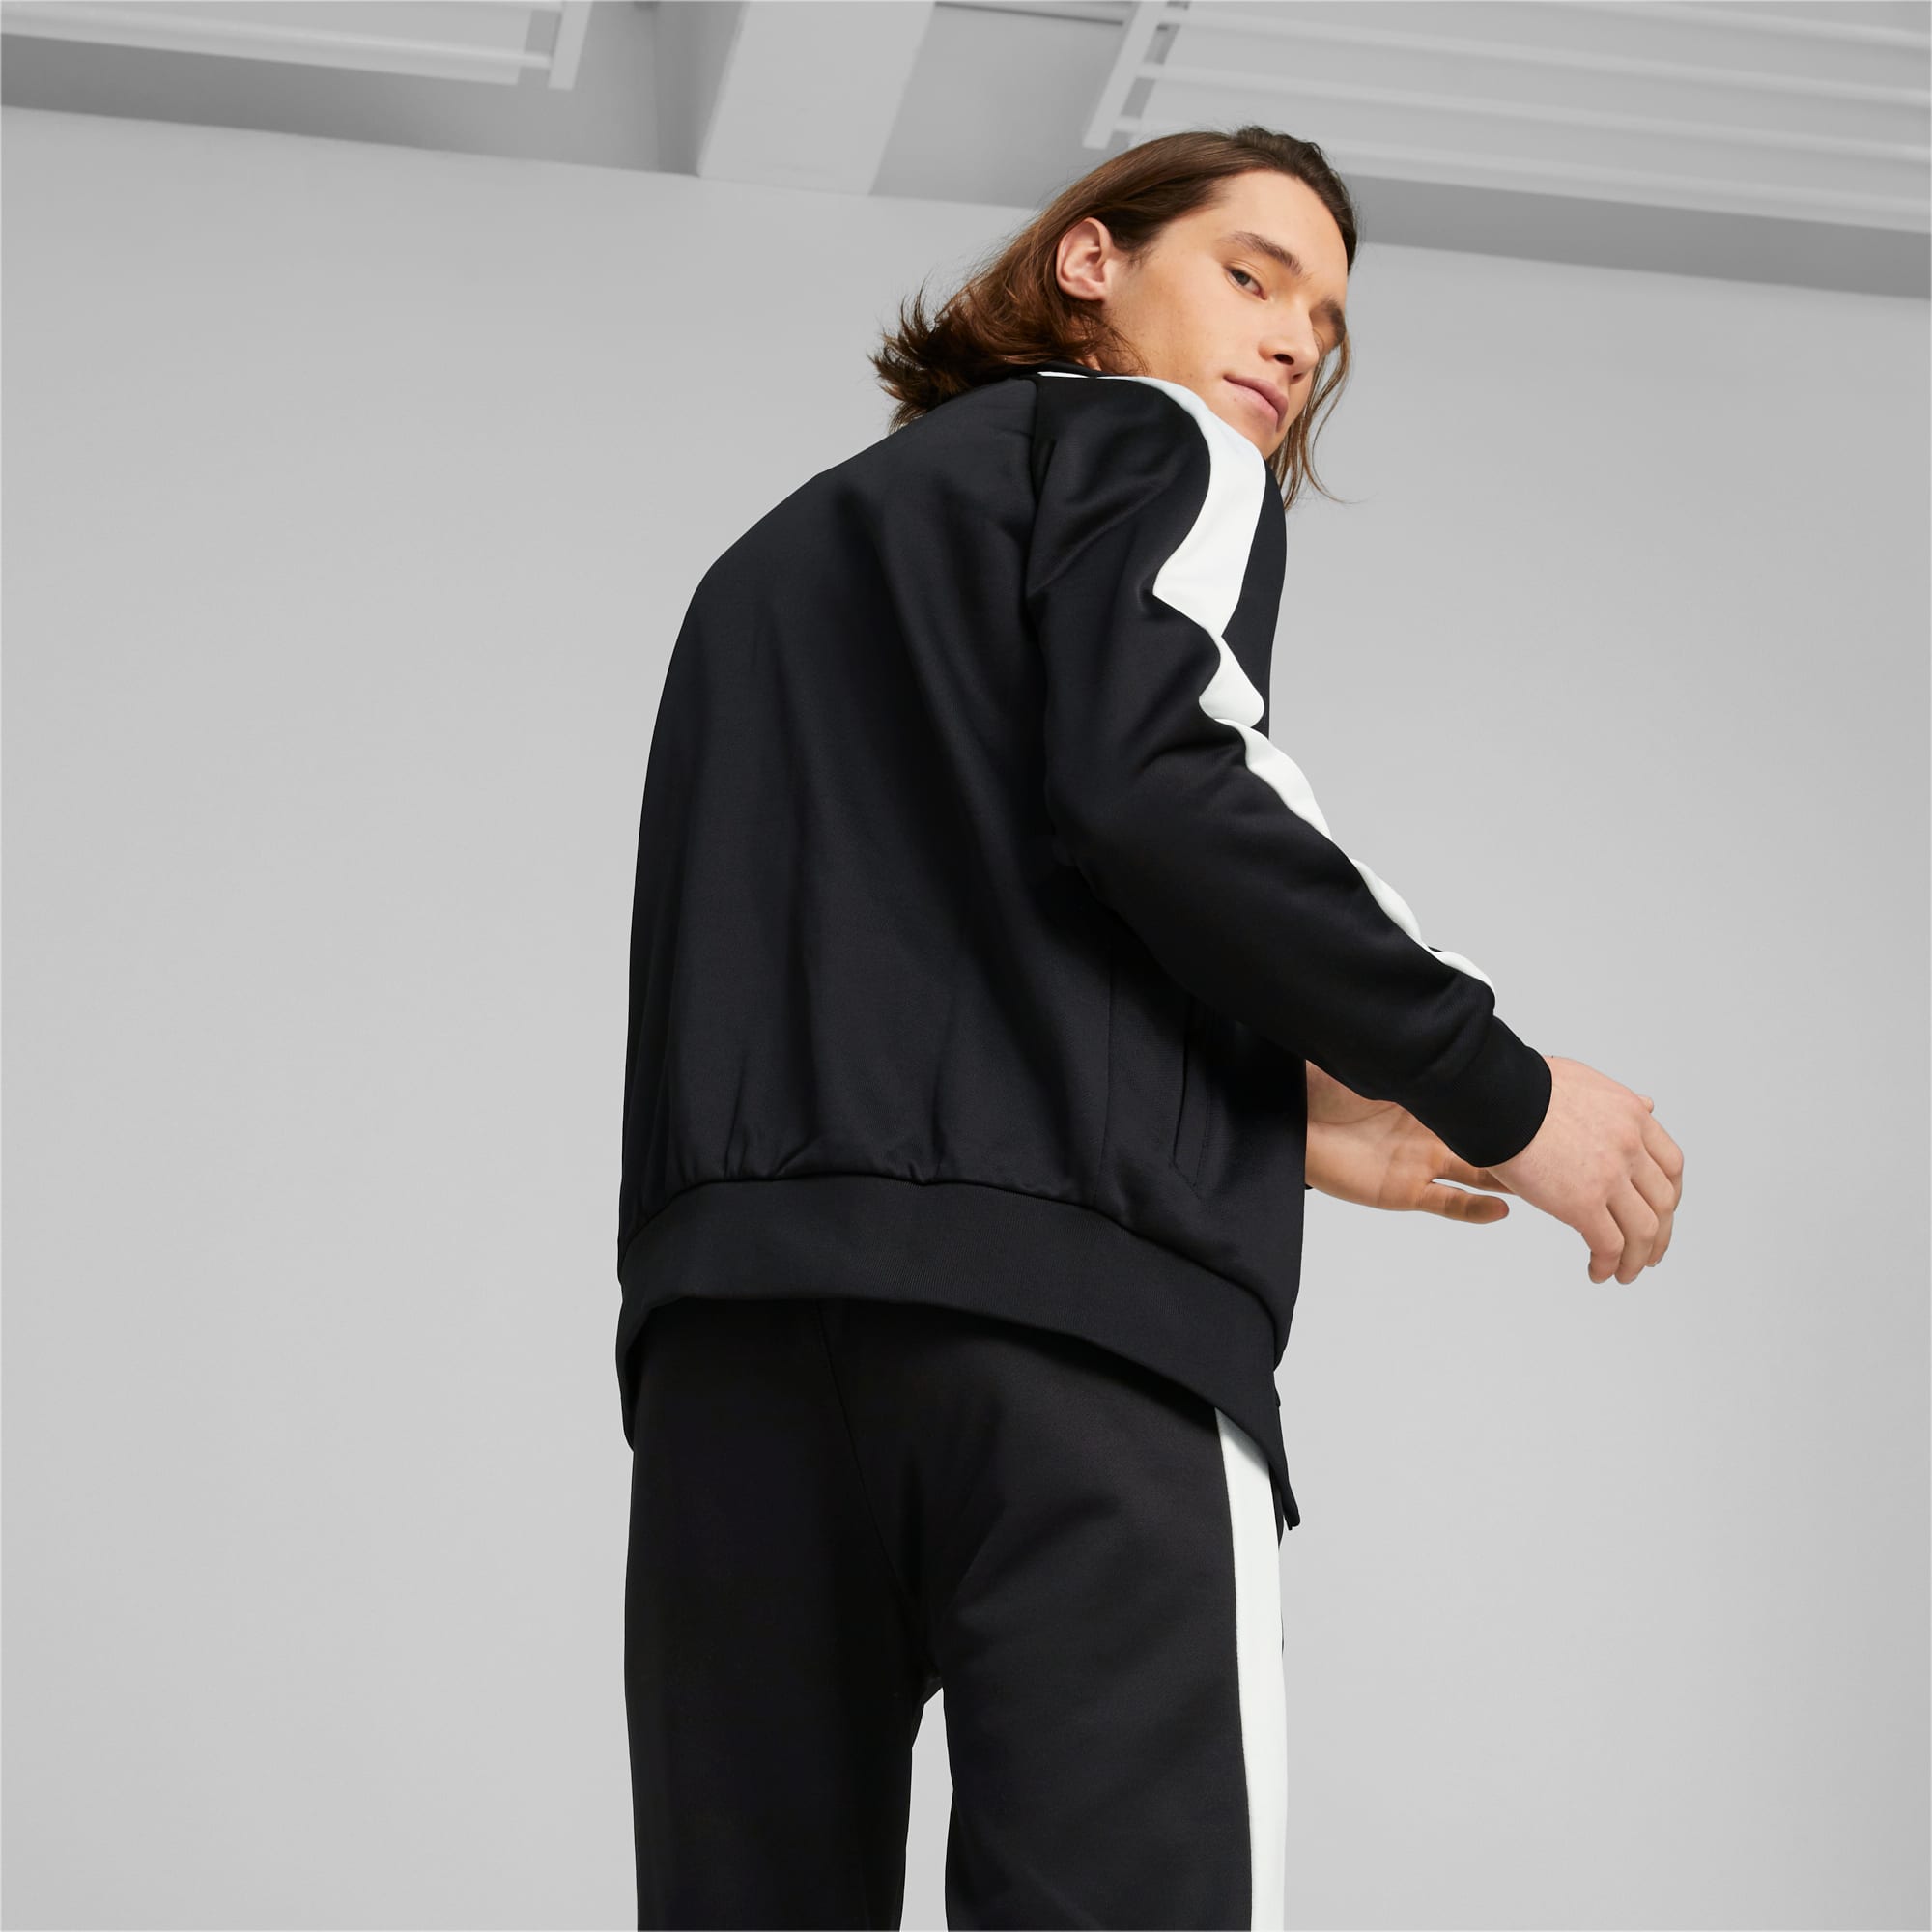 PUMA Iconic T7 Men's Track Jacket, Black, Size XXS, Clothing